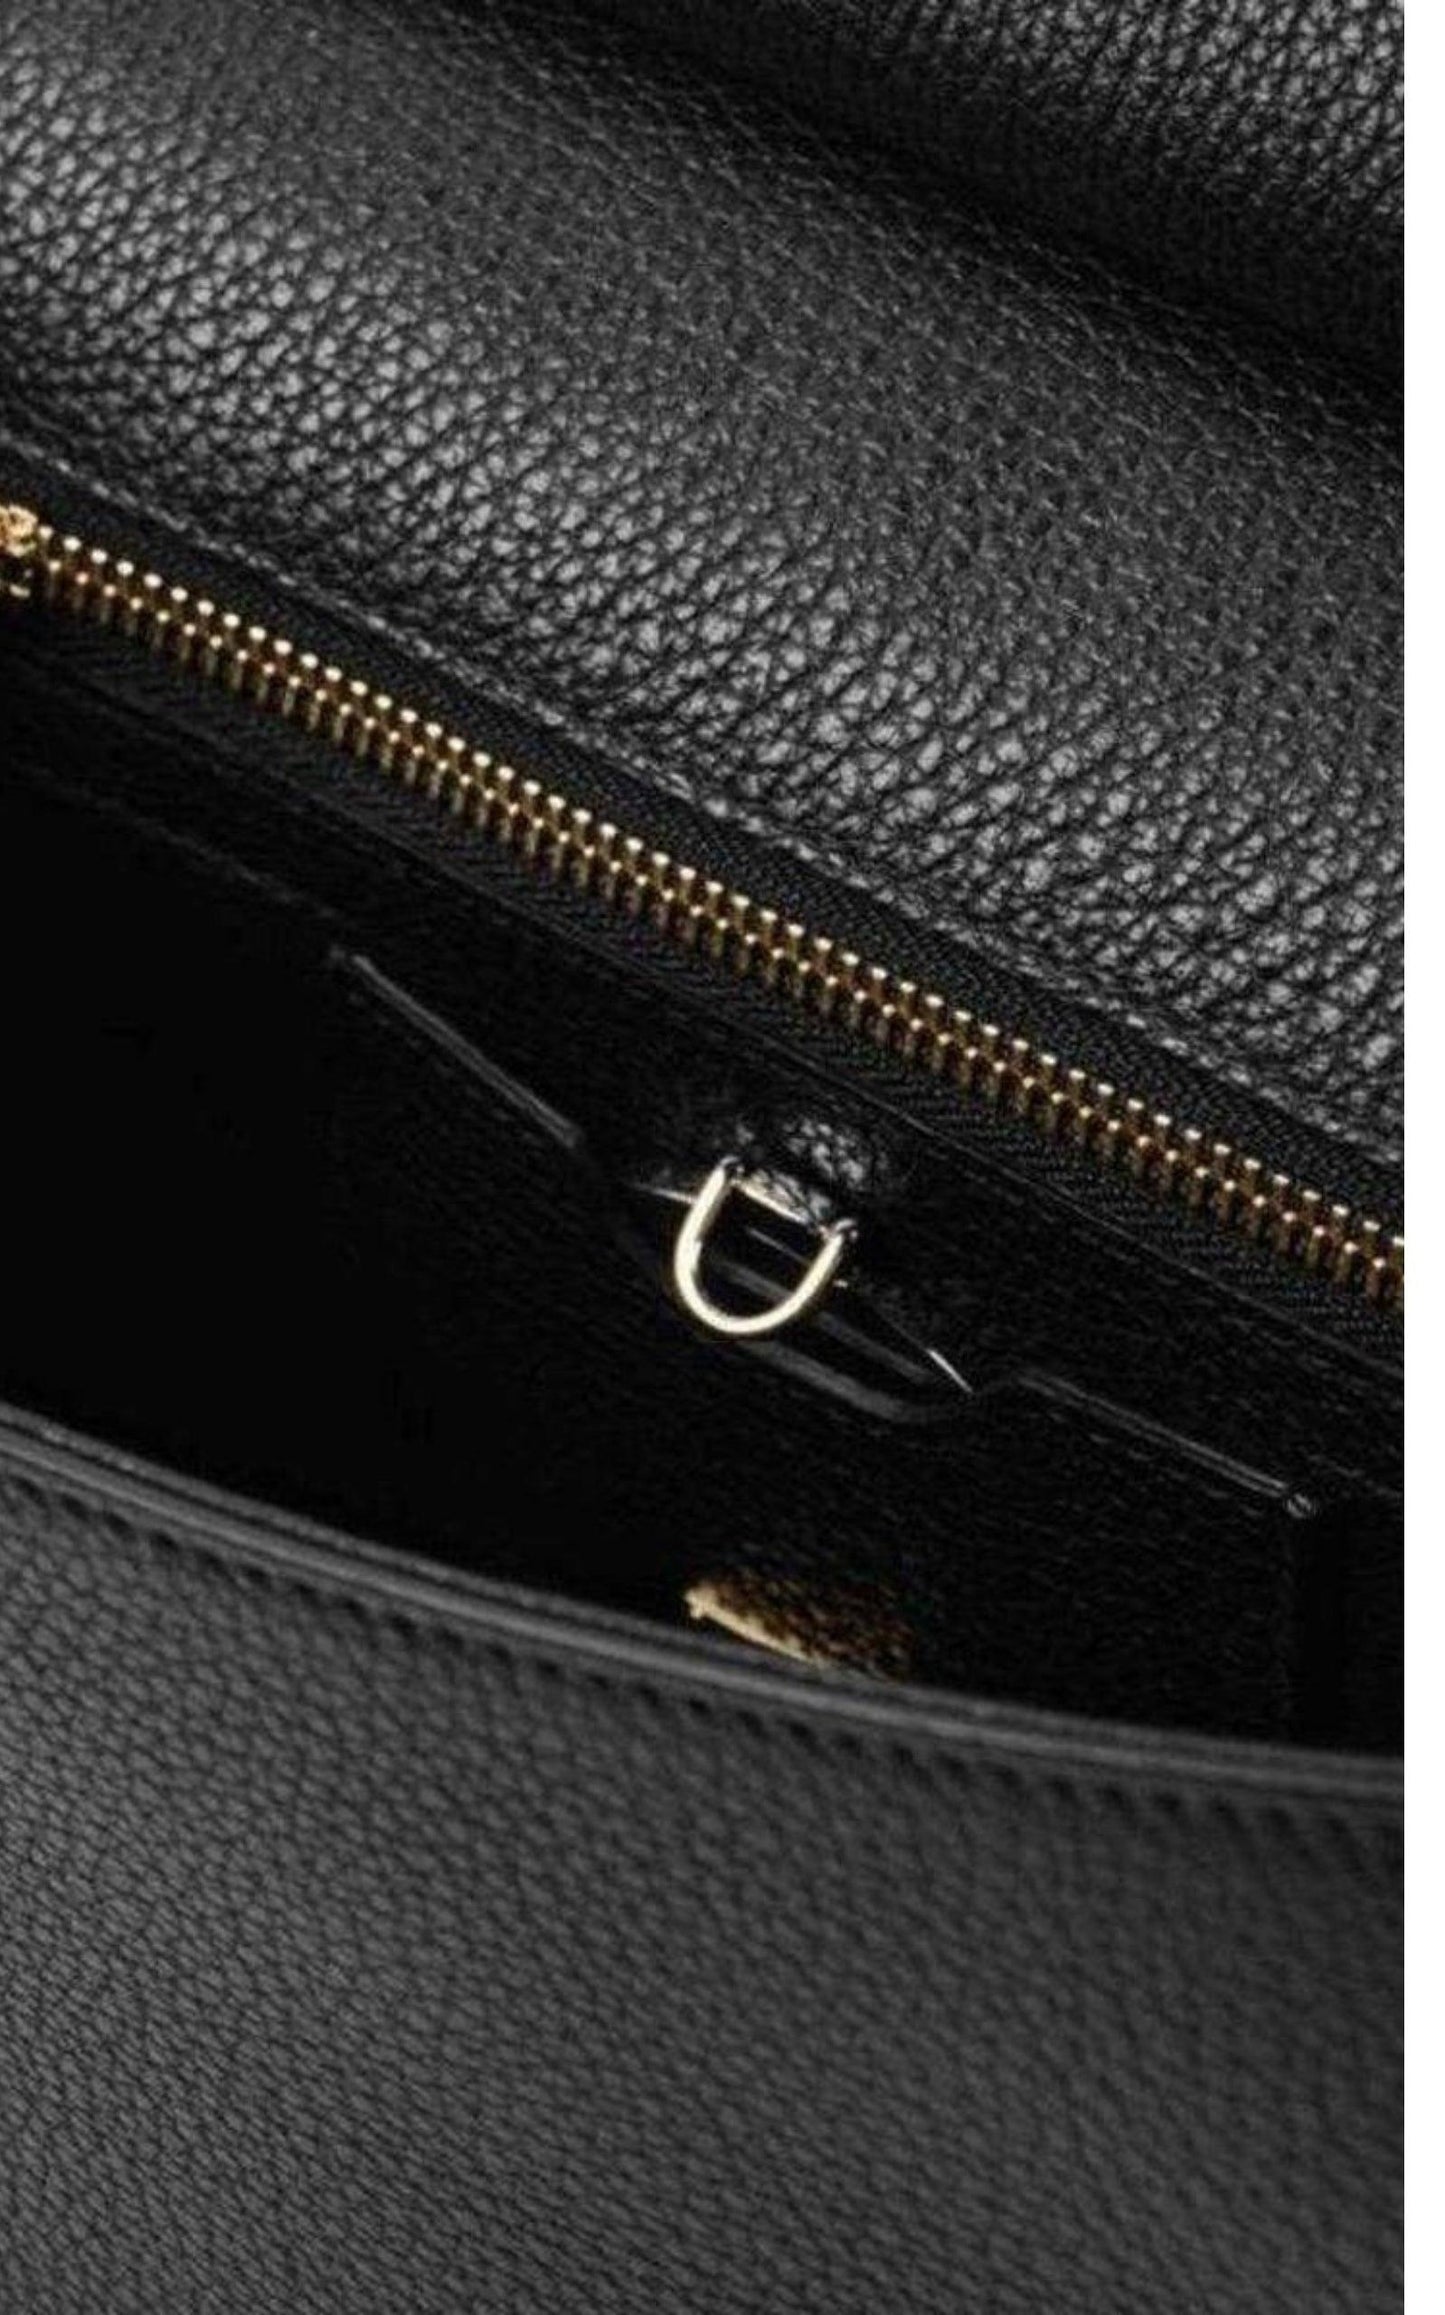  Dolce & GabbanaSicily In Raffia Shoulder Leather Bag - Runway Catalog